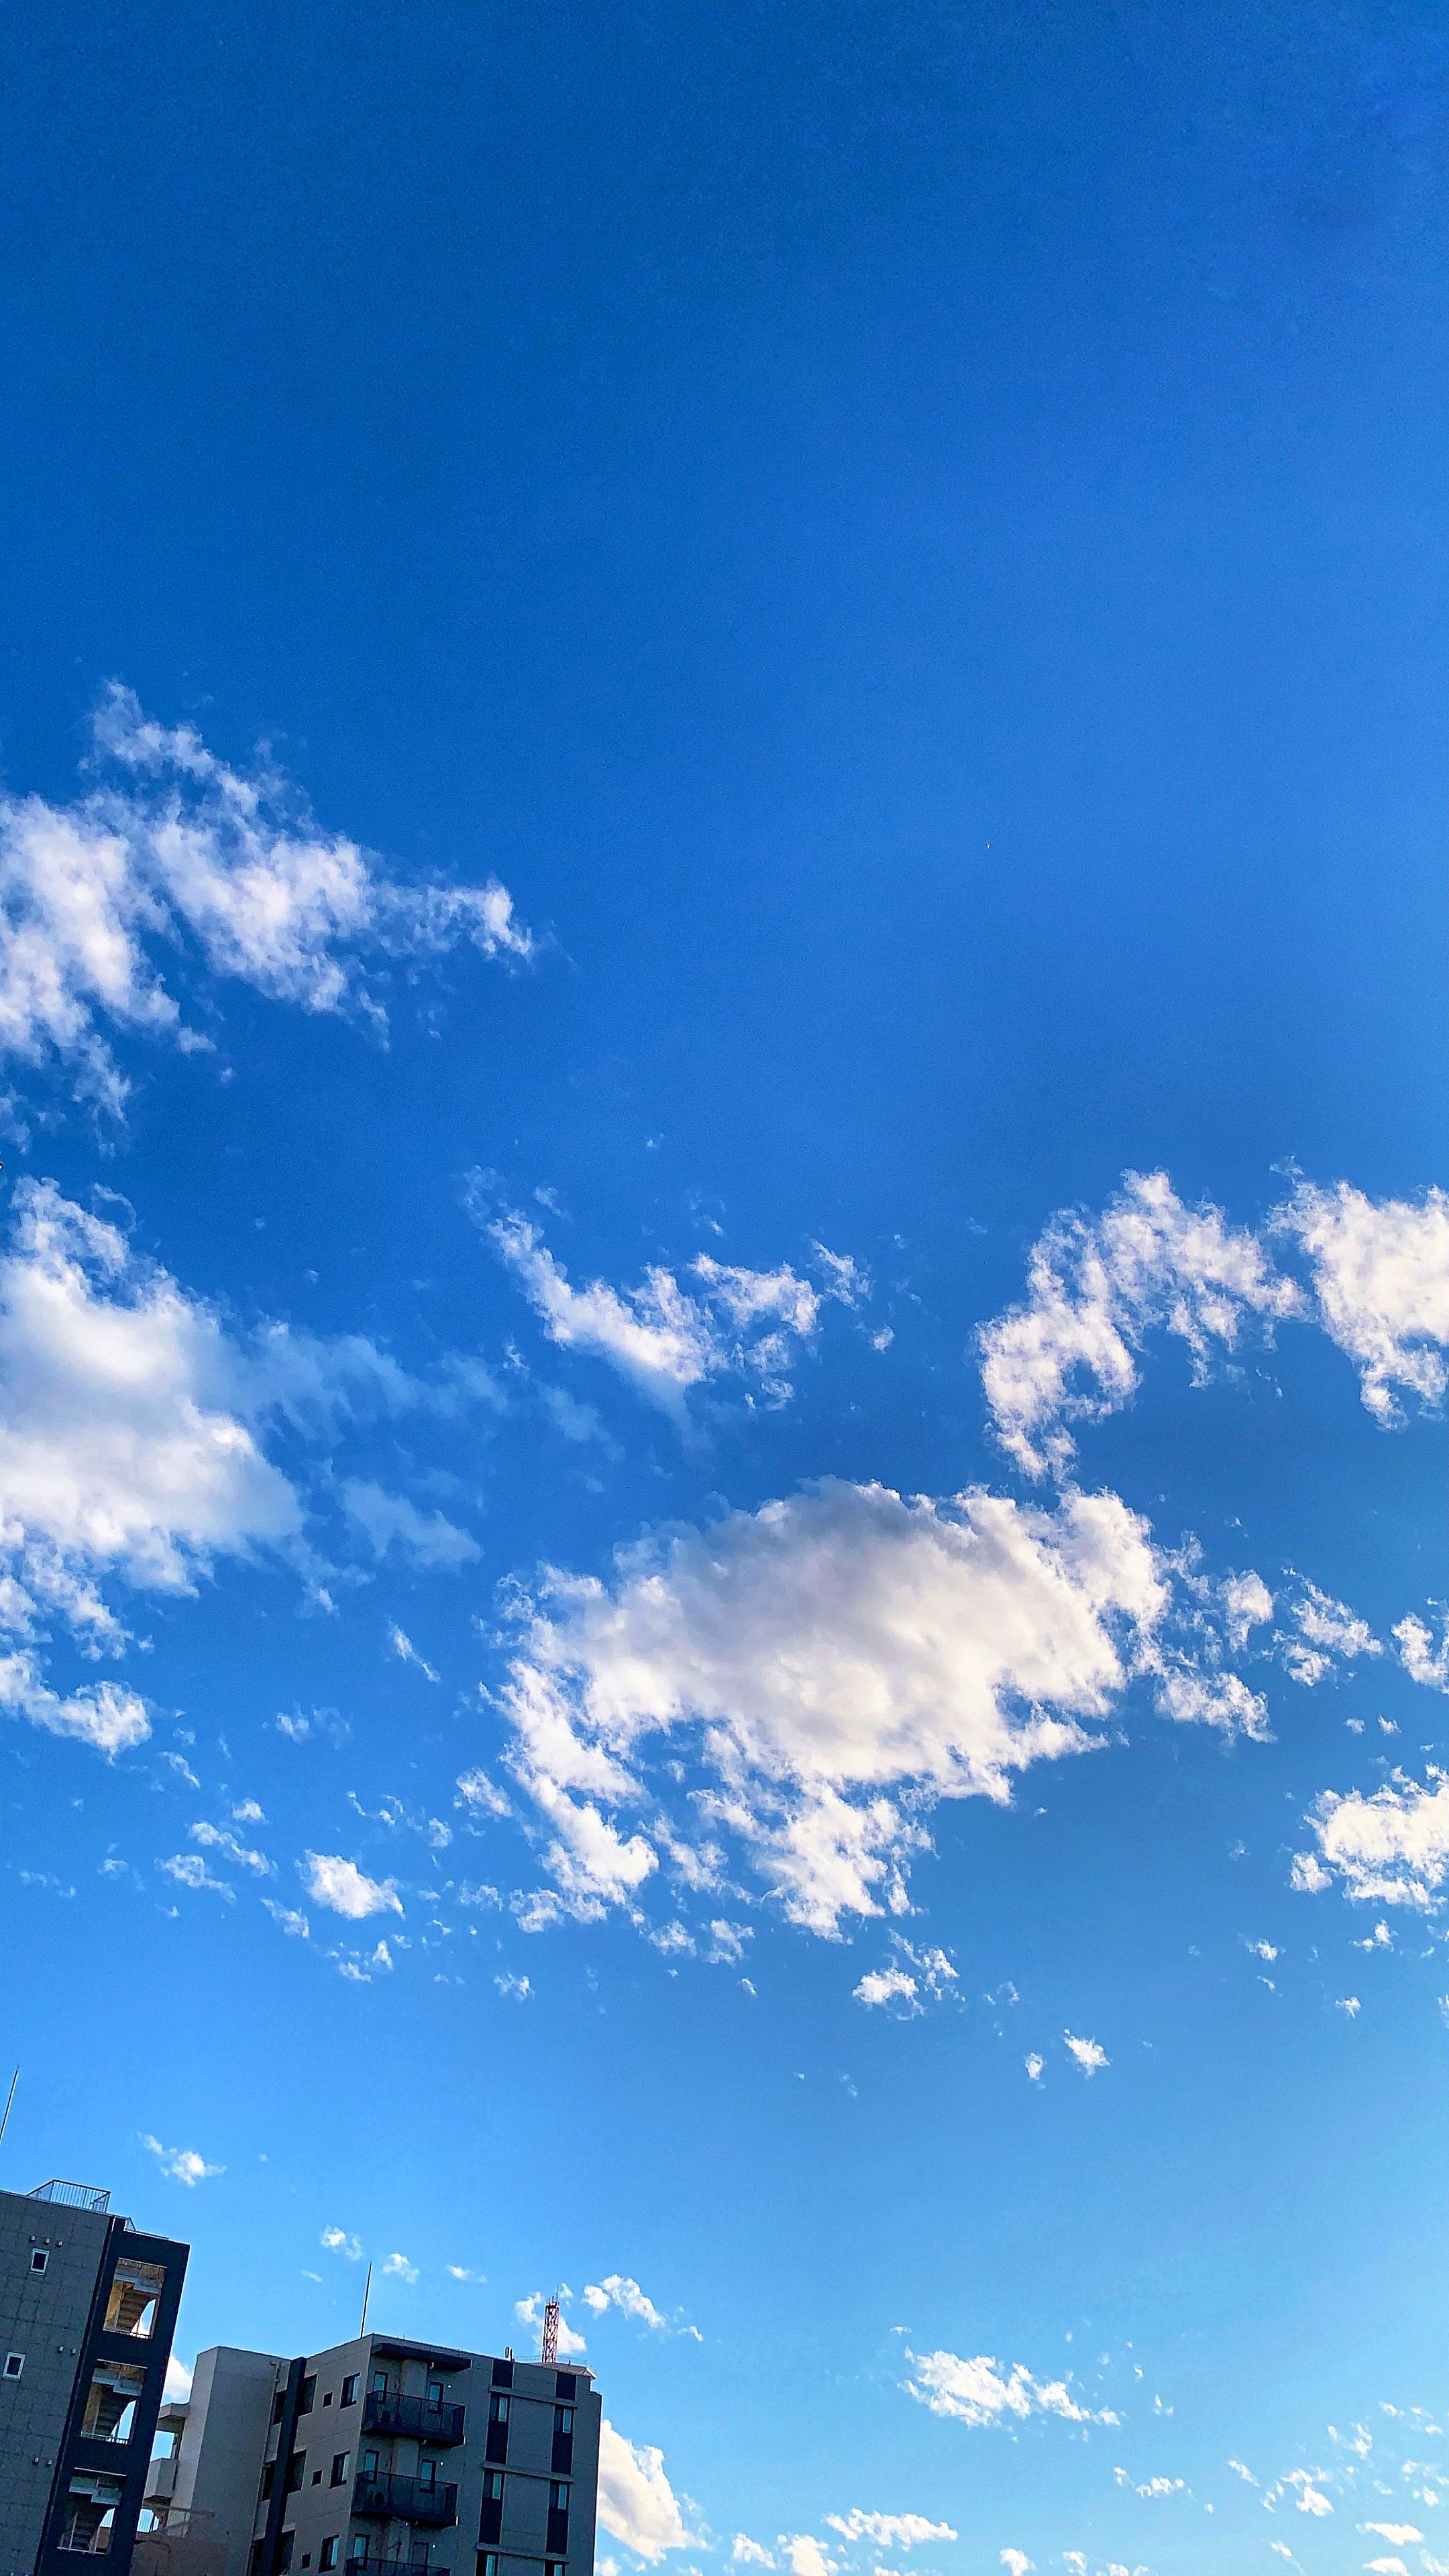 Hãy làm nền cho máy tính của bạn với những hình ảnh bầu trời đẹp trong xanh để tâm hồn luôn rực rỡ với sự thanh tịnh và yên bình. Cùng chiêm ngưỡng những tuyệt tác nghệ thuật trên bầu trời khuyết tật này!